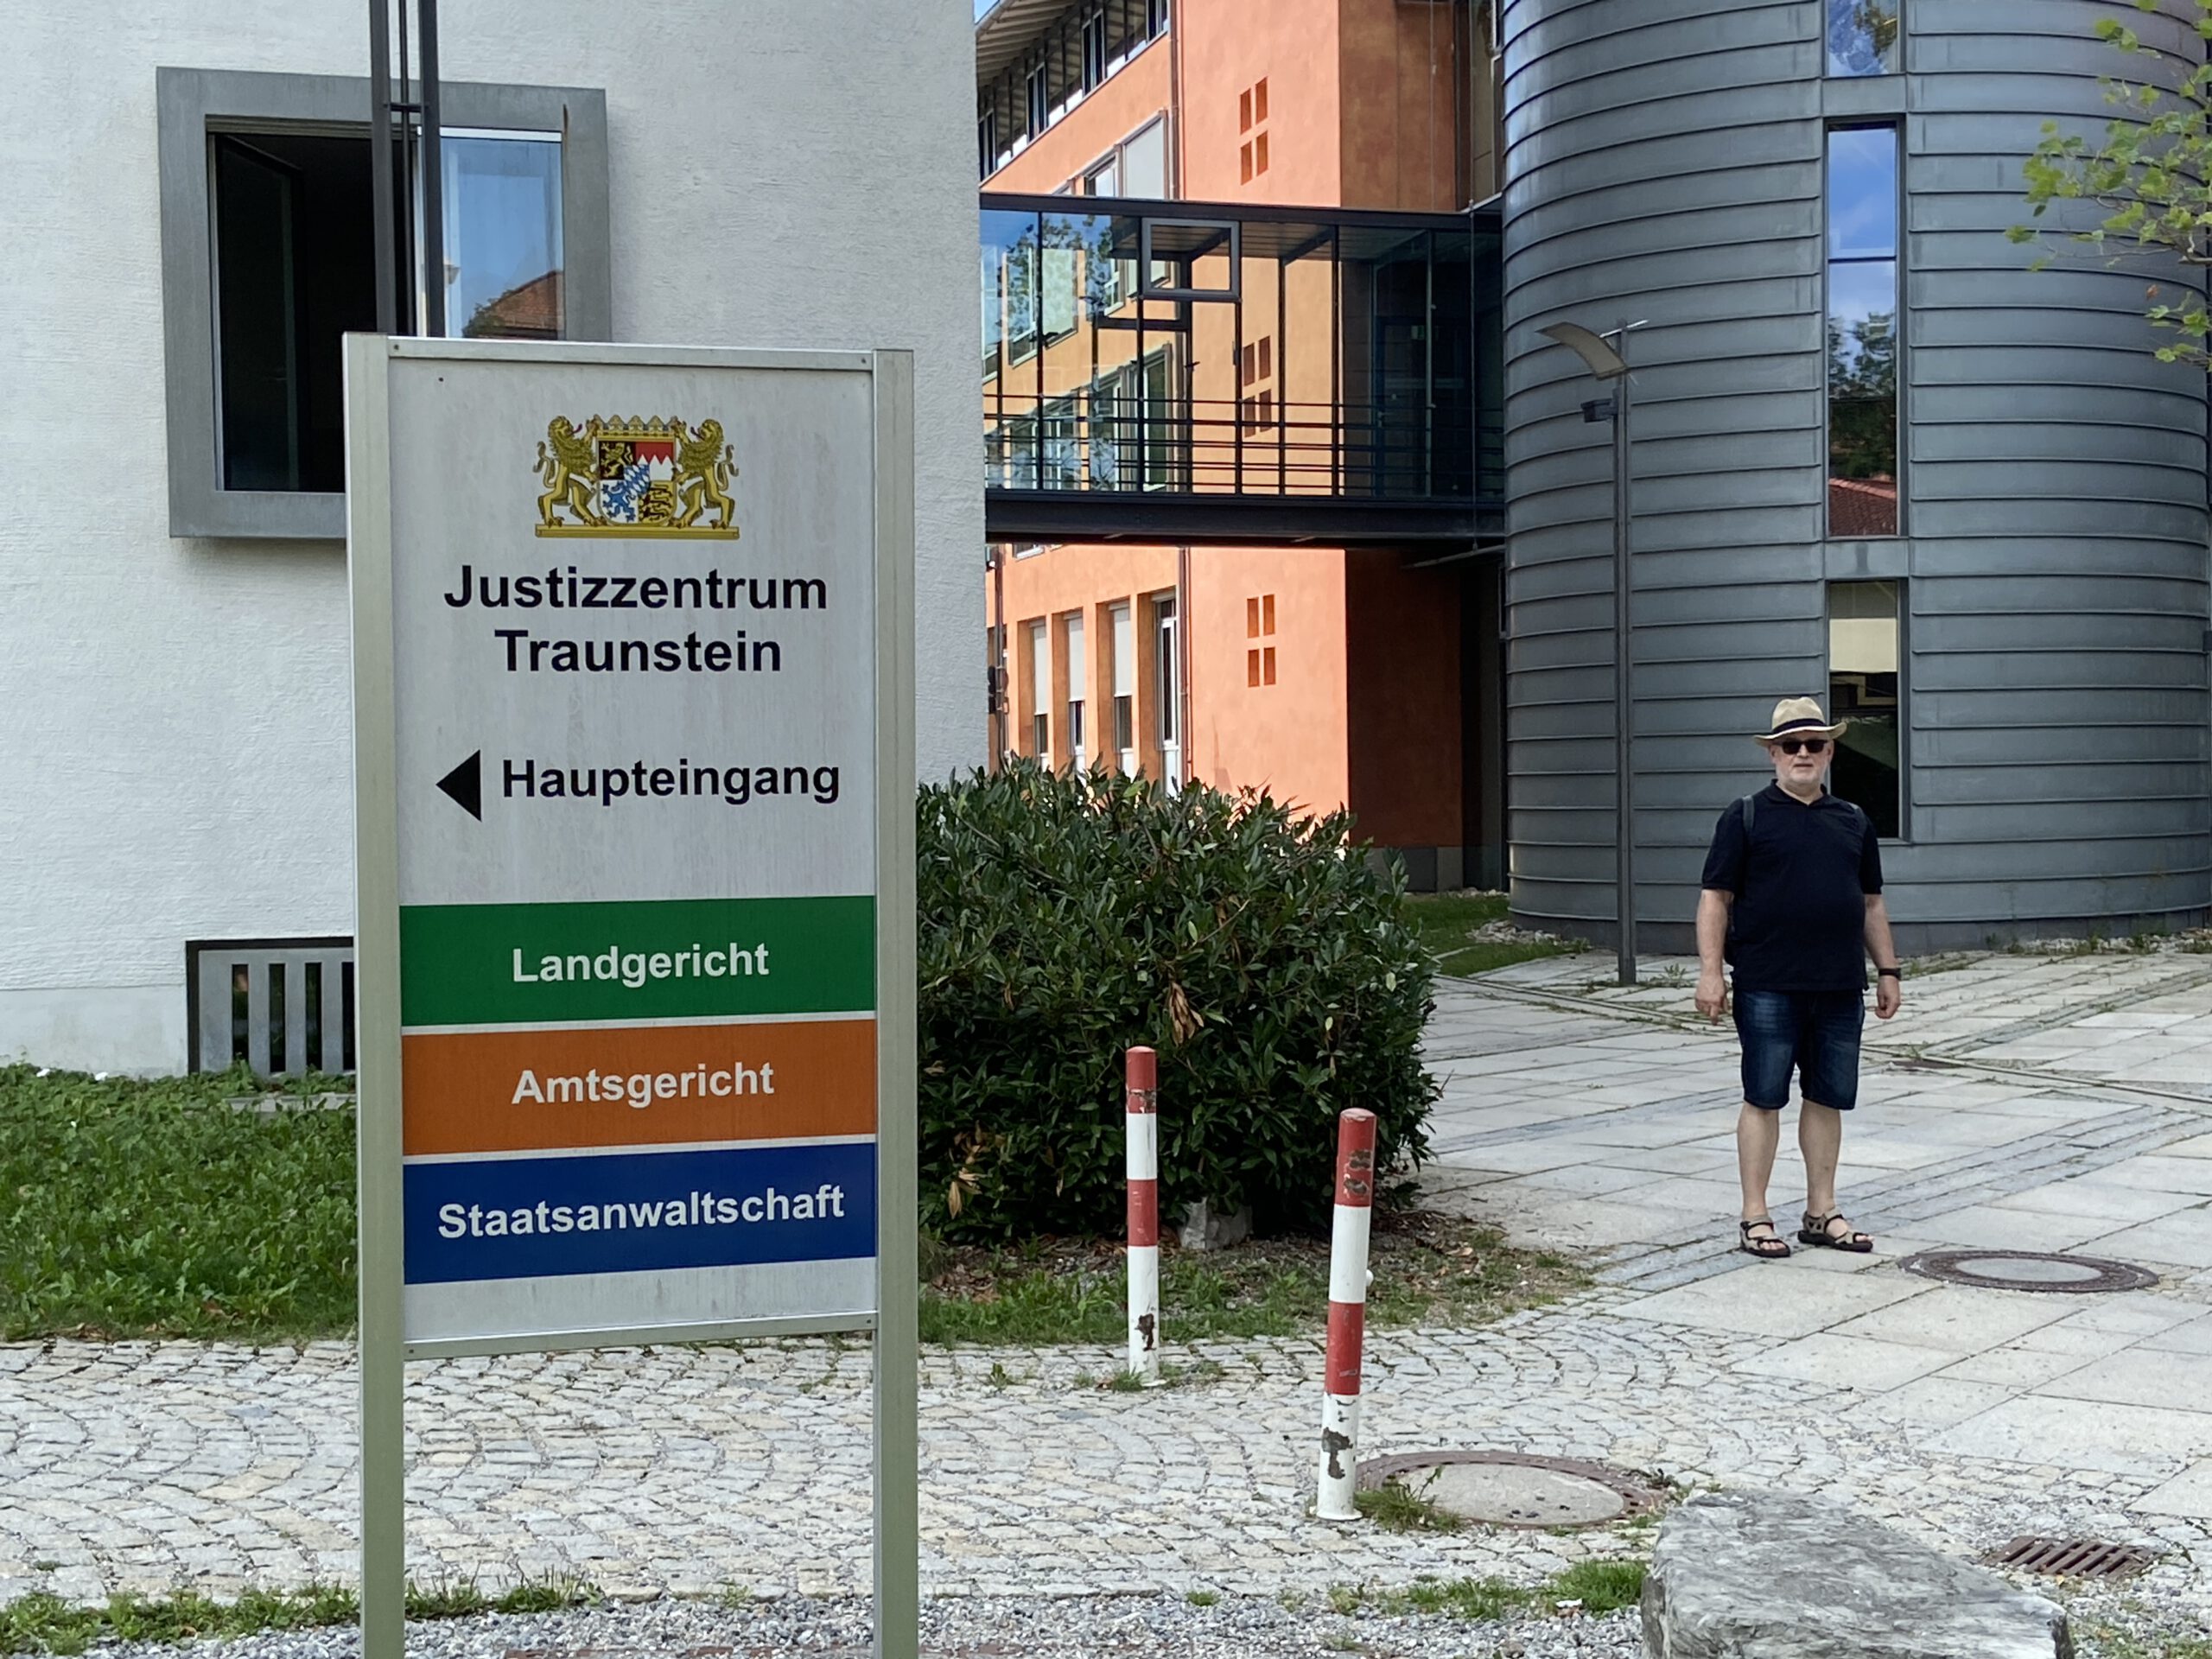 Justizquartier in Traunstein (c) Karin Theis 2022